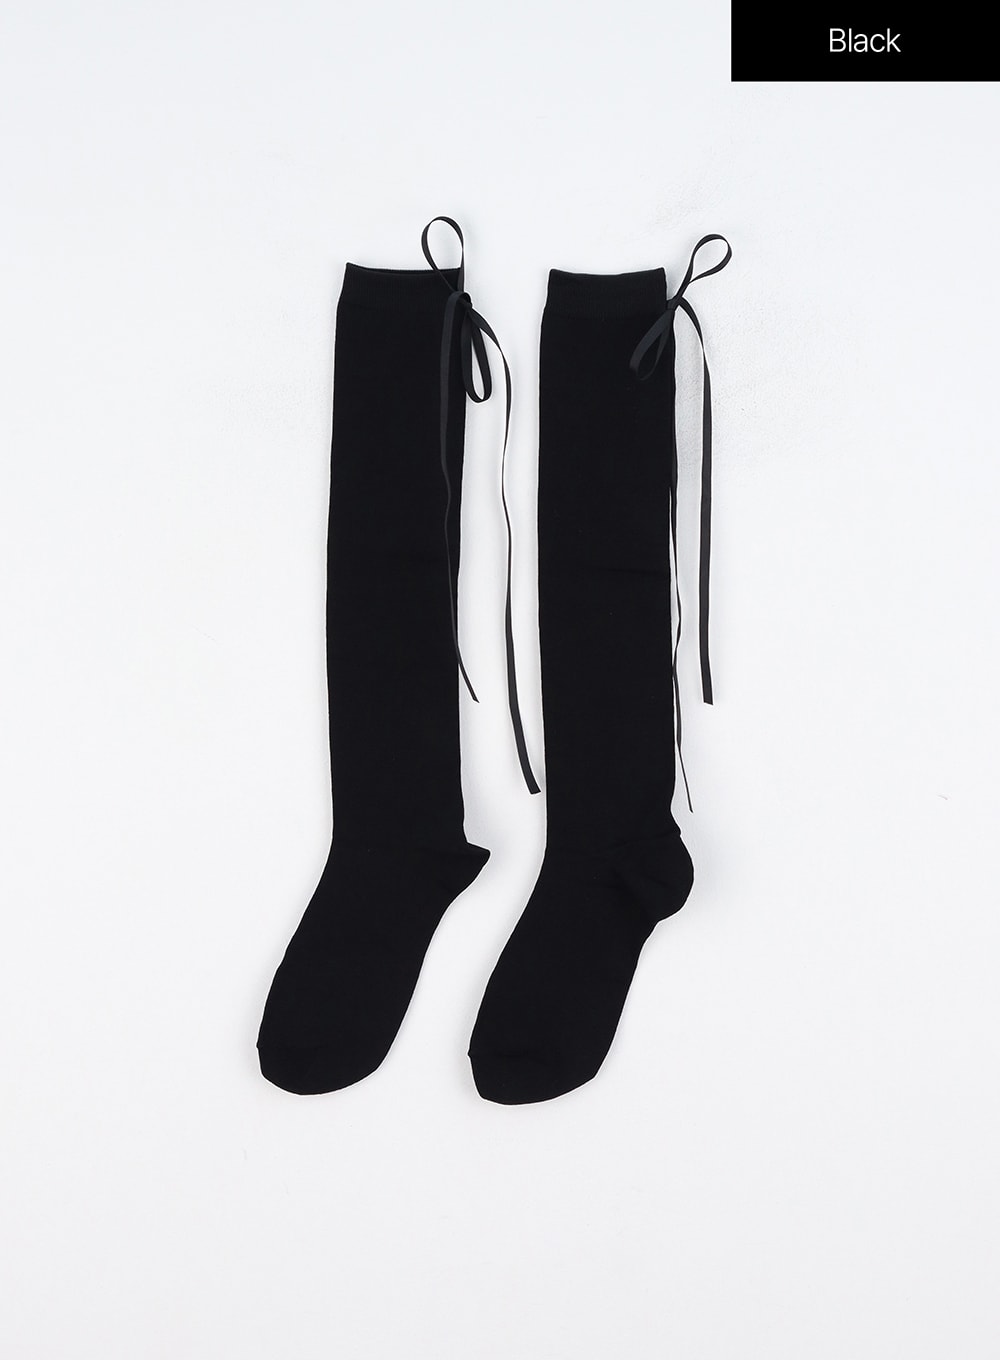 ribbon-tie-socks-oo319 / Black